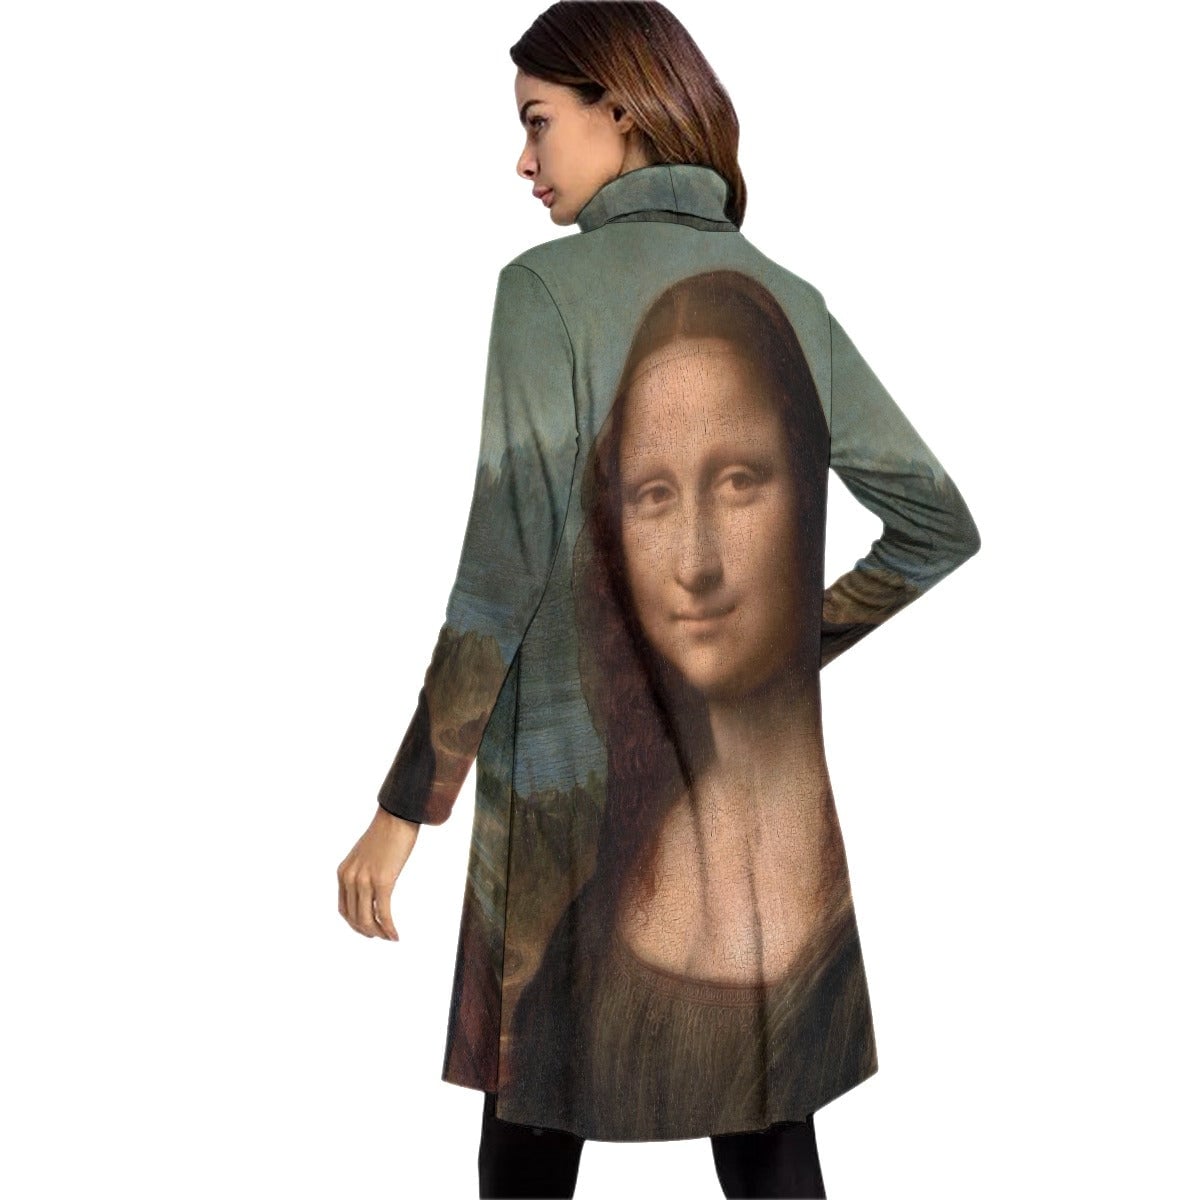 The Mona Lisa by Leonardo da Vinci Art Dress Long Sleeve